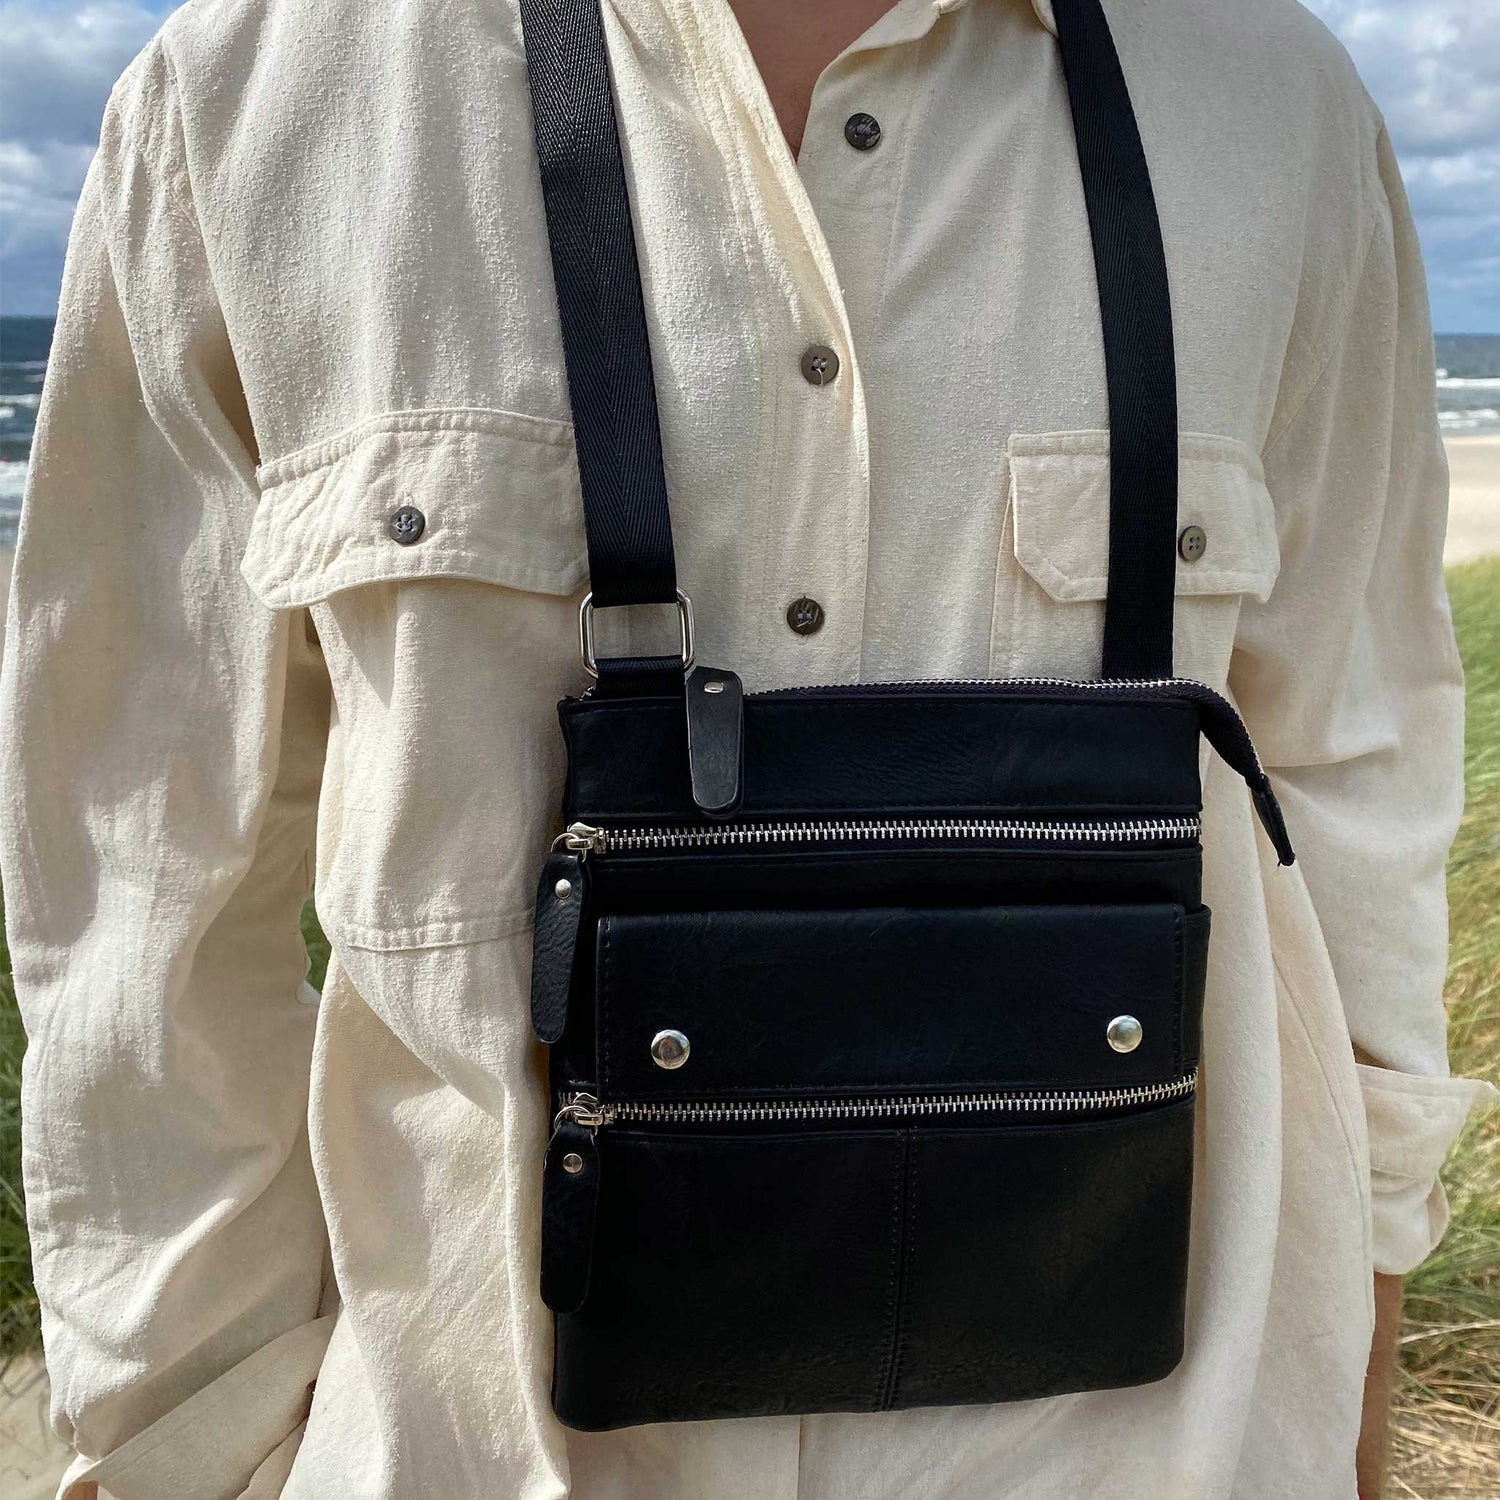  bagular crossbbody bag for men. Black shoulder bag made from faux vegan leather. soft, lightweight and durable bag, gift for him